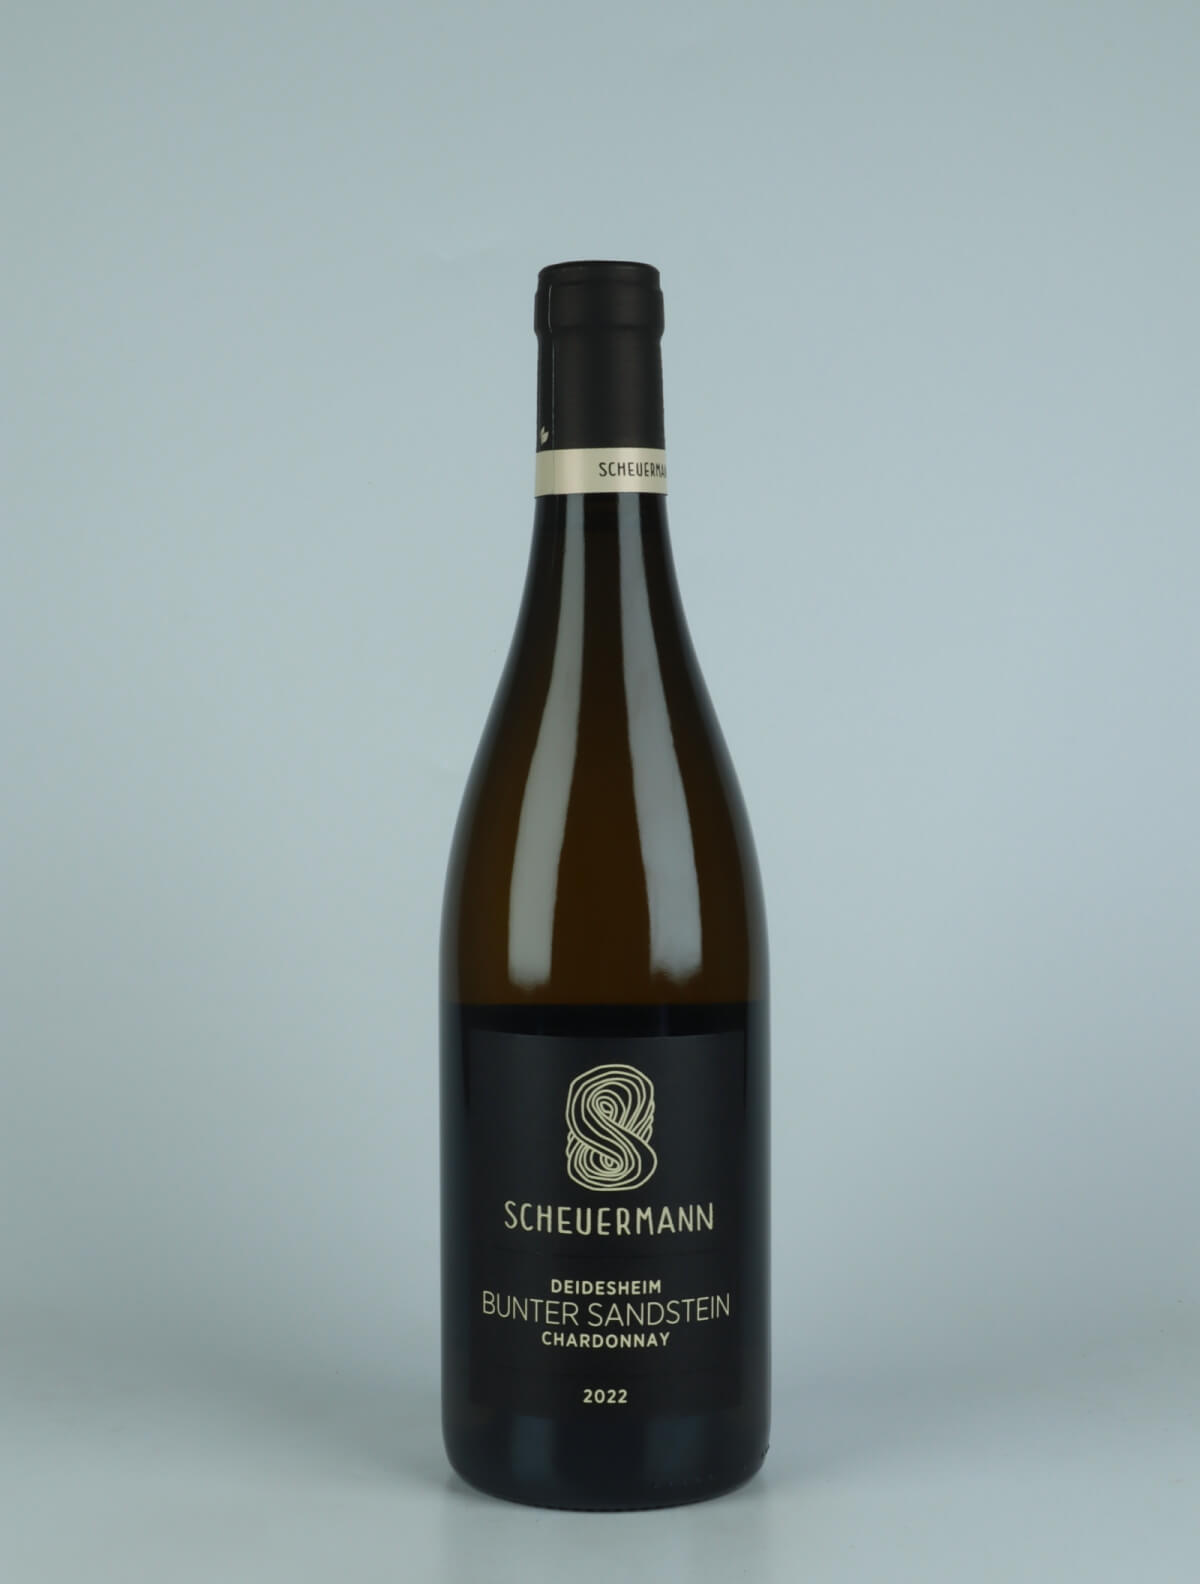 A bottle 2022 Chardonnay Bunter Sandstein - Deidesheim White wine from Weingut Scheuermann, Pfalz in Germany